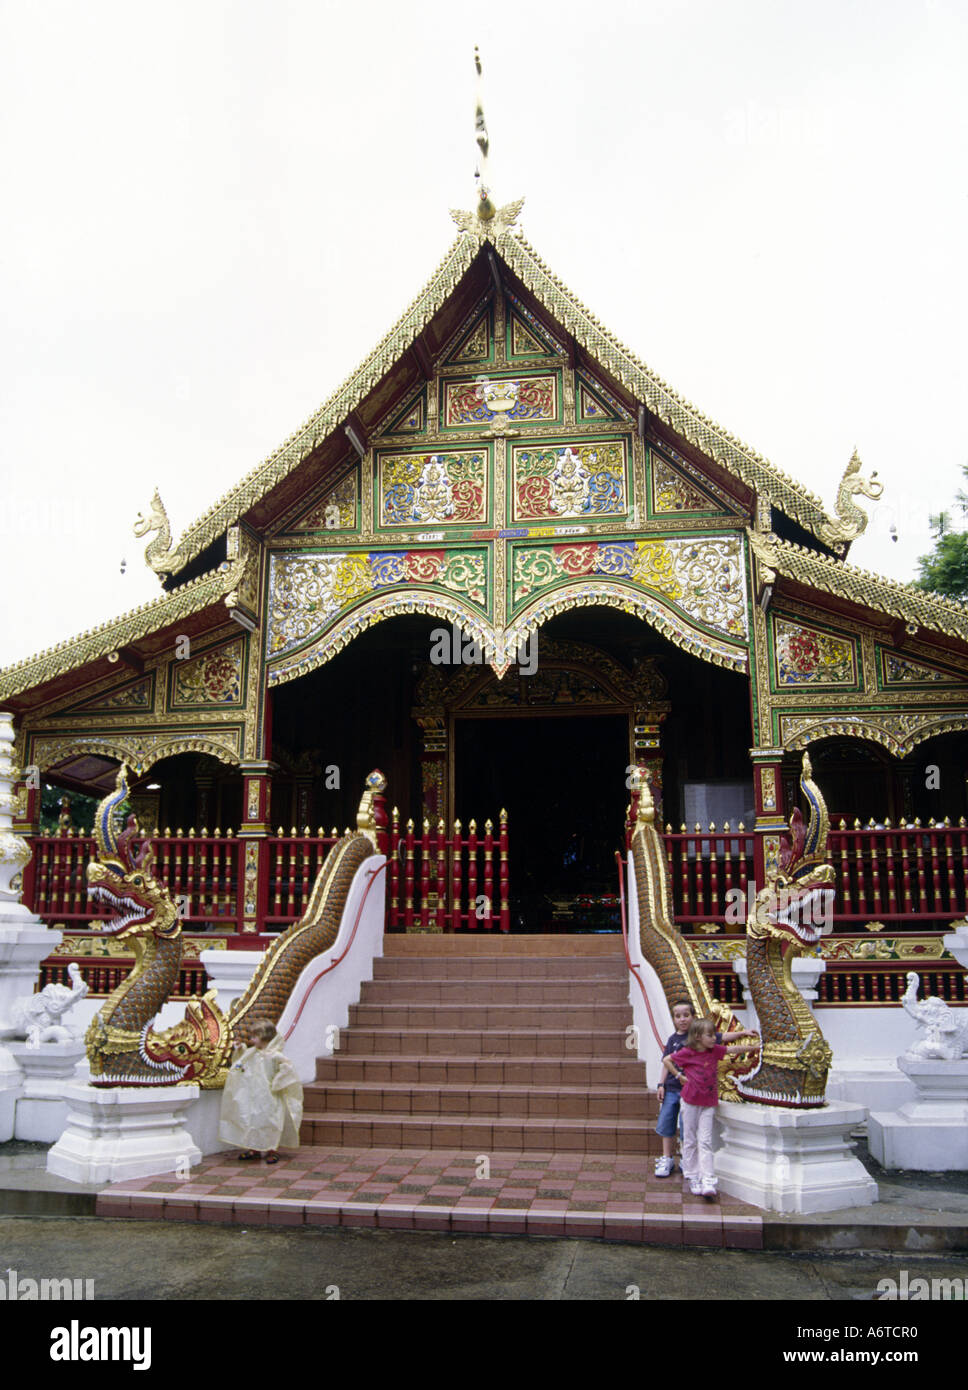 Westliche Kinder am Eingang zu einem Wat oder Tempel Chiang Saen Thailand Stockfoto